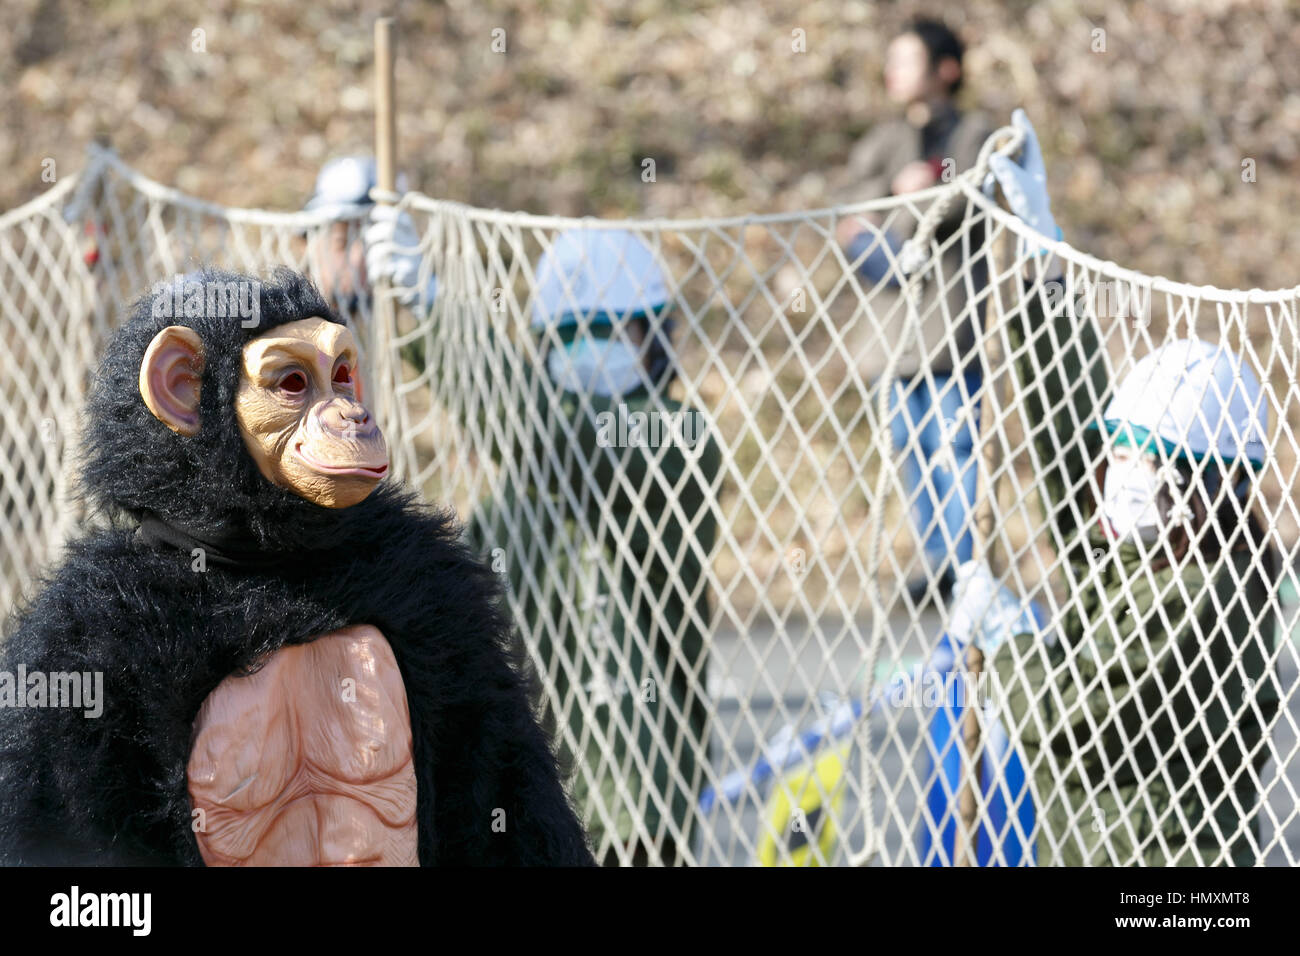 Tokio, Japan. 7. Februar 2017. Ein Tierpfleger in einem Schimpansen Kostüm versucht zu entkommen, während die Tierpfleger halten ein Netz in dem Versuch, es während einer entkam Tier Bohrer beim Tama Zoological Park am 7. Februar 2017, Tokio, Japan zu erfassen. Der jährliche Flucht Bohrer findet in Tokio Zoos für Tierpfleger zu üben, wie sie im Falle einer Naturkatastrophe oder anderen Notfällen reagieren müssten. In diesem Jahr ein Mitglied des Personals in einem Schimpansen Kostüm wurde gefangen genommen und von anderen Tierpfleger bevor es heraus auf den Straßen von Tokio entkommen konnte. Bildnachweis: Aflo Co. Ltd./Alamy Live-Nachrichten Stockfoto